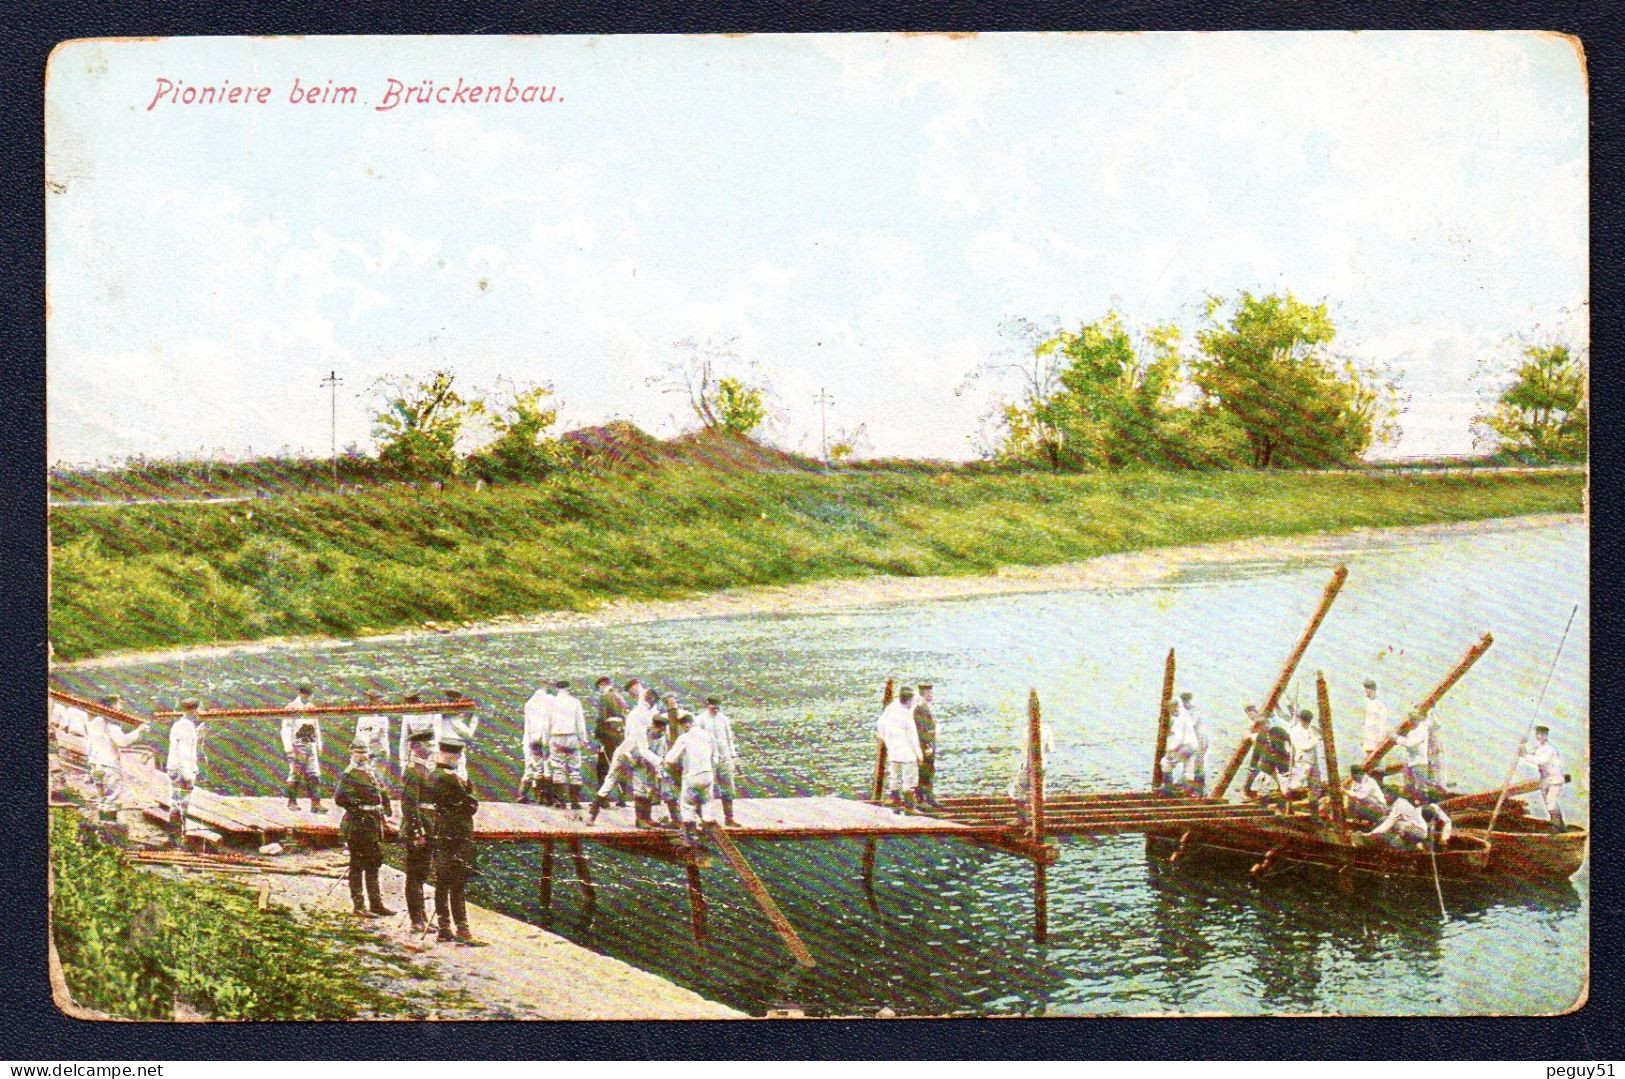 Pioniere Beim Brückenbau. Soldats Allemands Du Génie Costruisant Un Pont. Feldpost Der 10. Reserve-Div. Juin 1915 - Guerre 1914-18